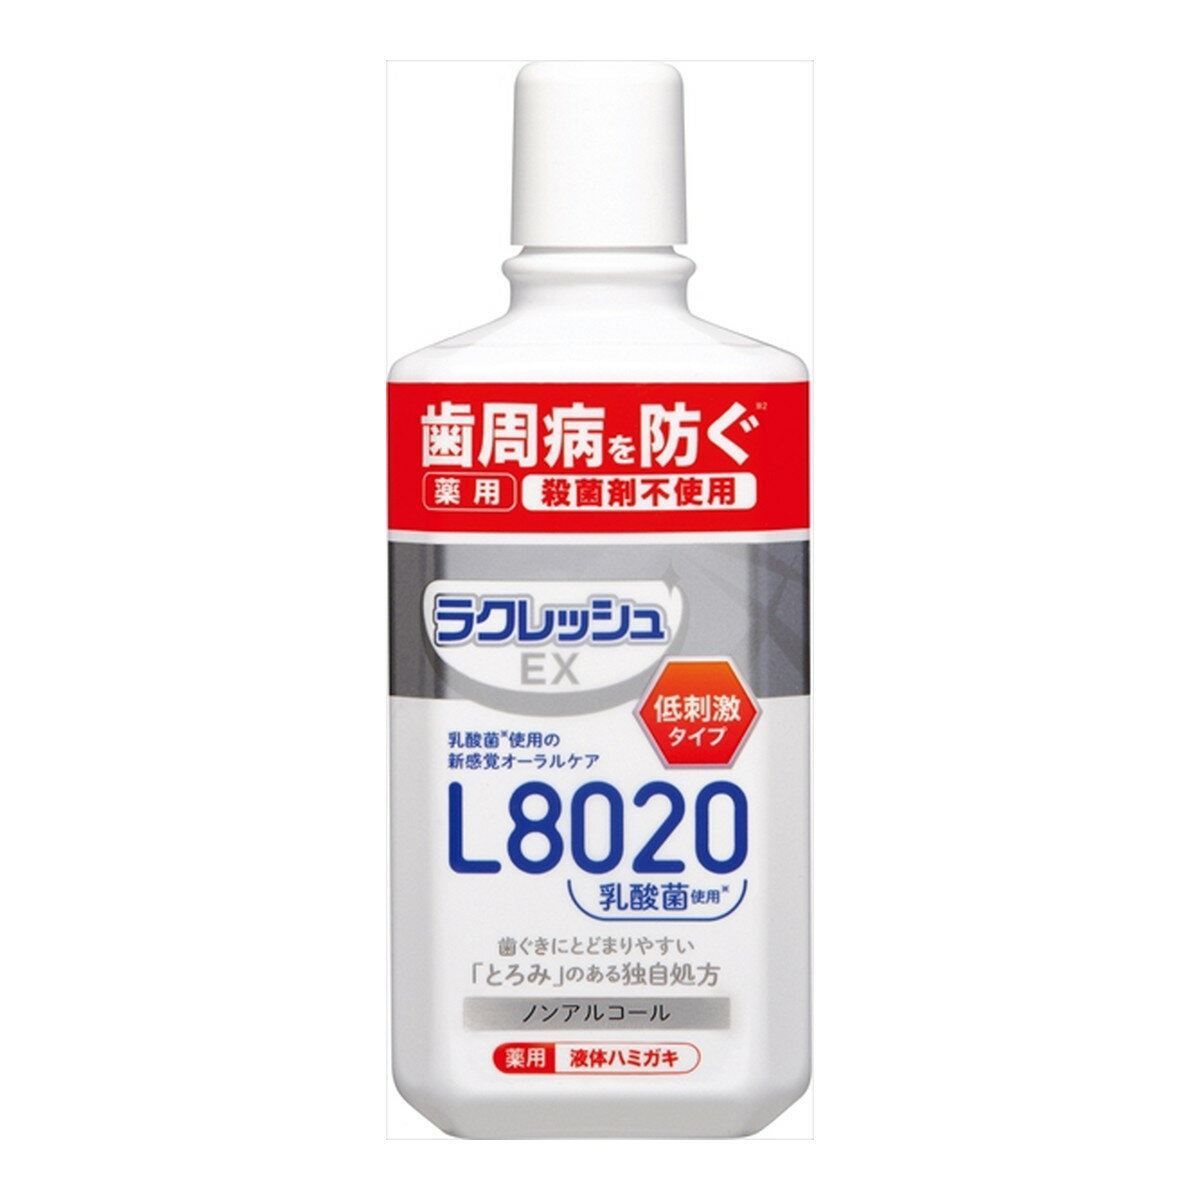 【送料込】 ジェクス ラクレッシュEX 薬用 液体ハミガキ 280ml 1個